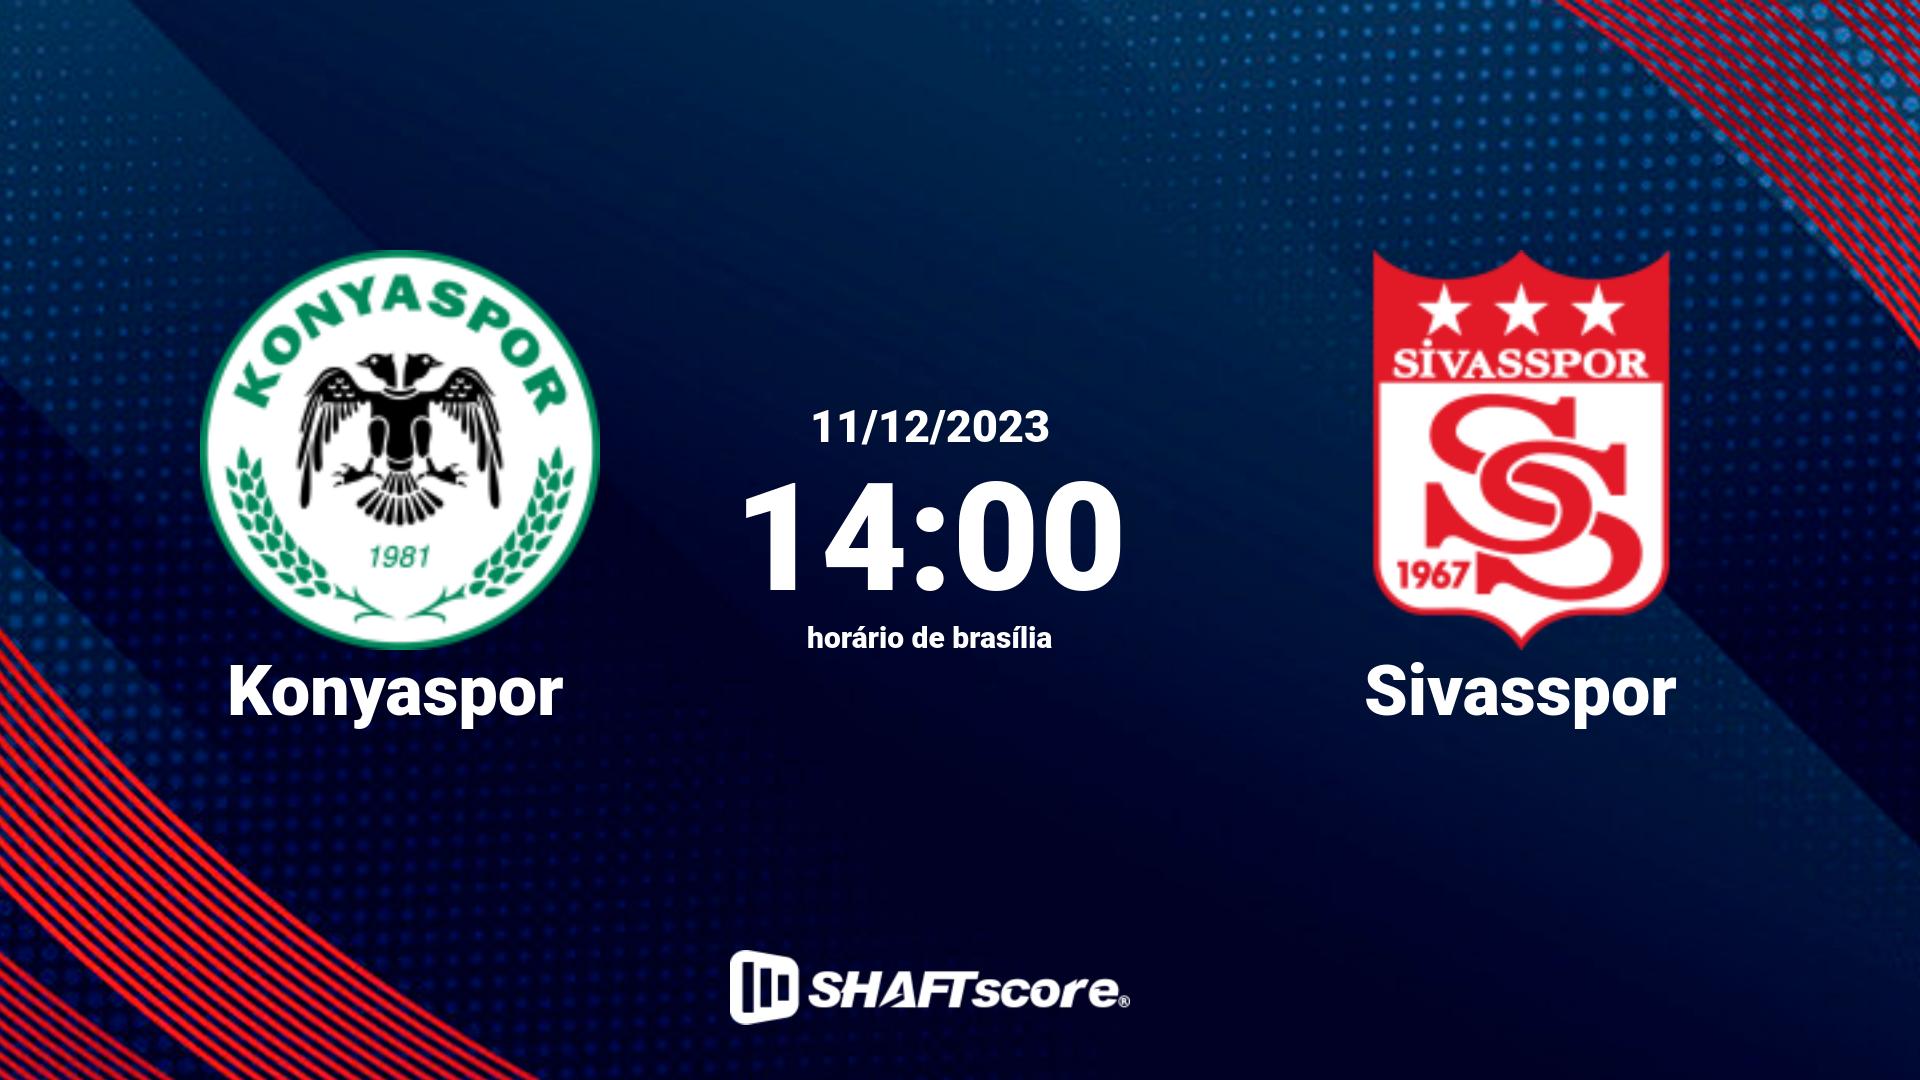 Estatísticas do jogo Konyaspor vs Sivasspor 11.12 14:00